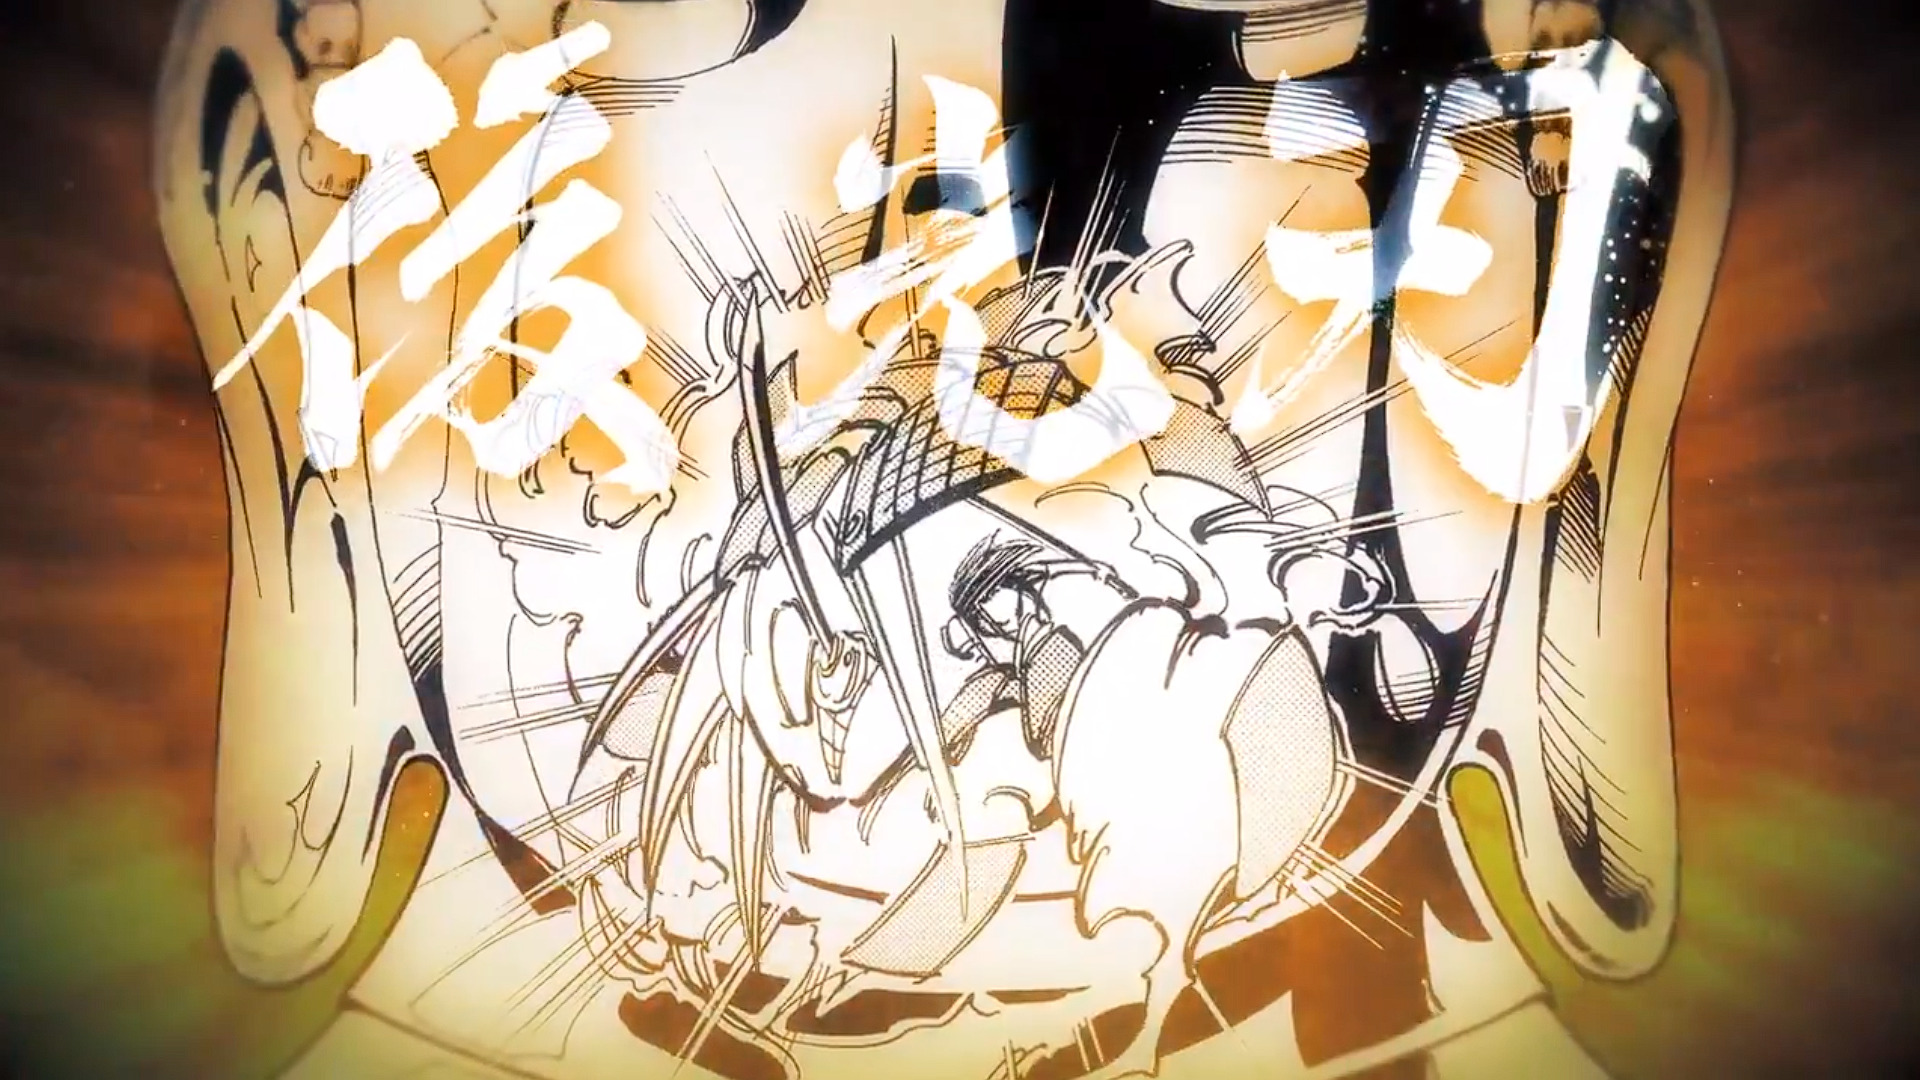 Shaman King - Asakura Yoh trailer screenshot 